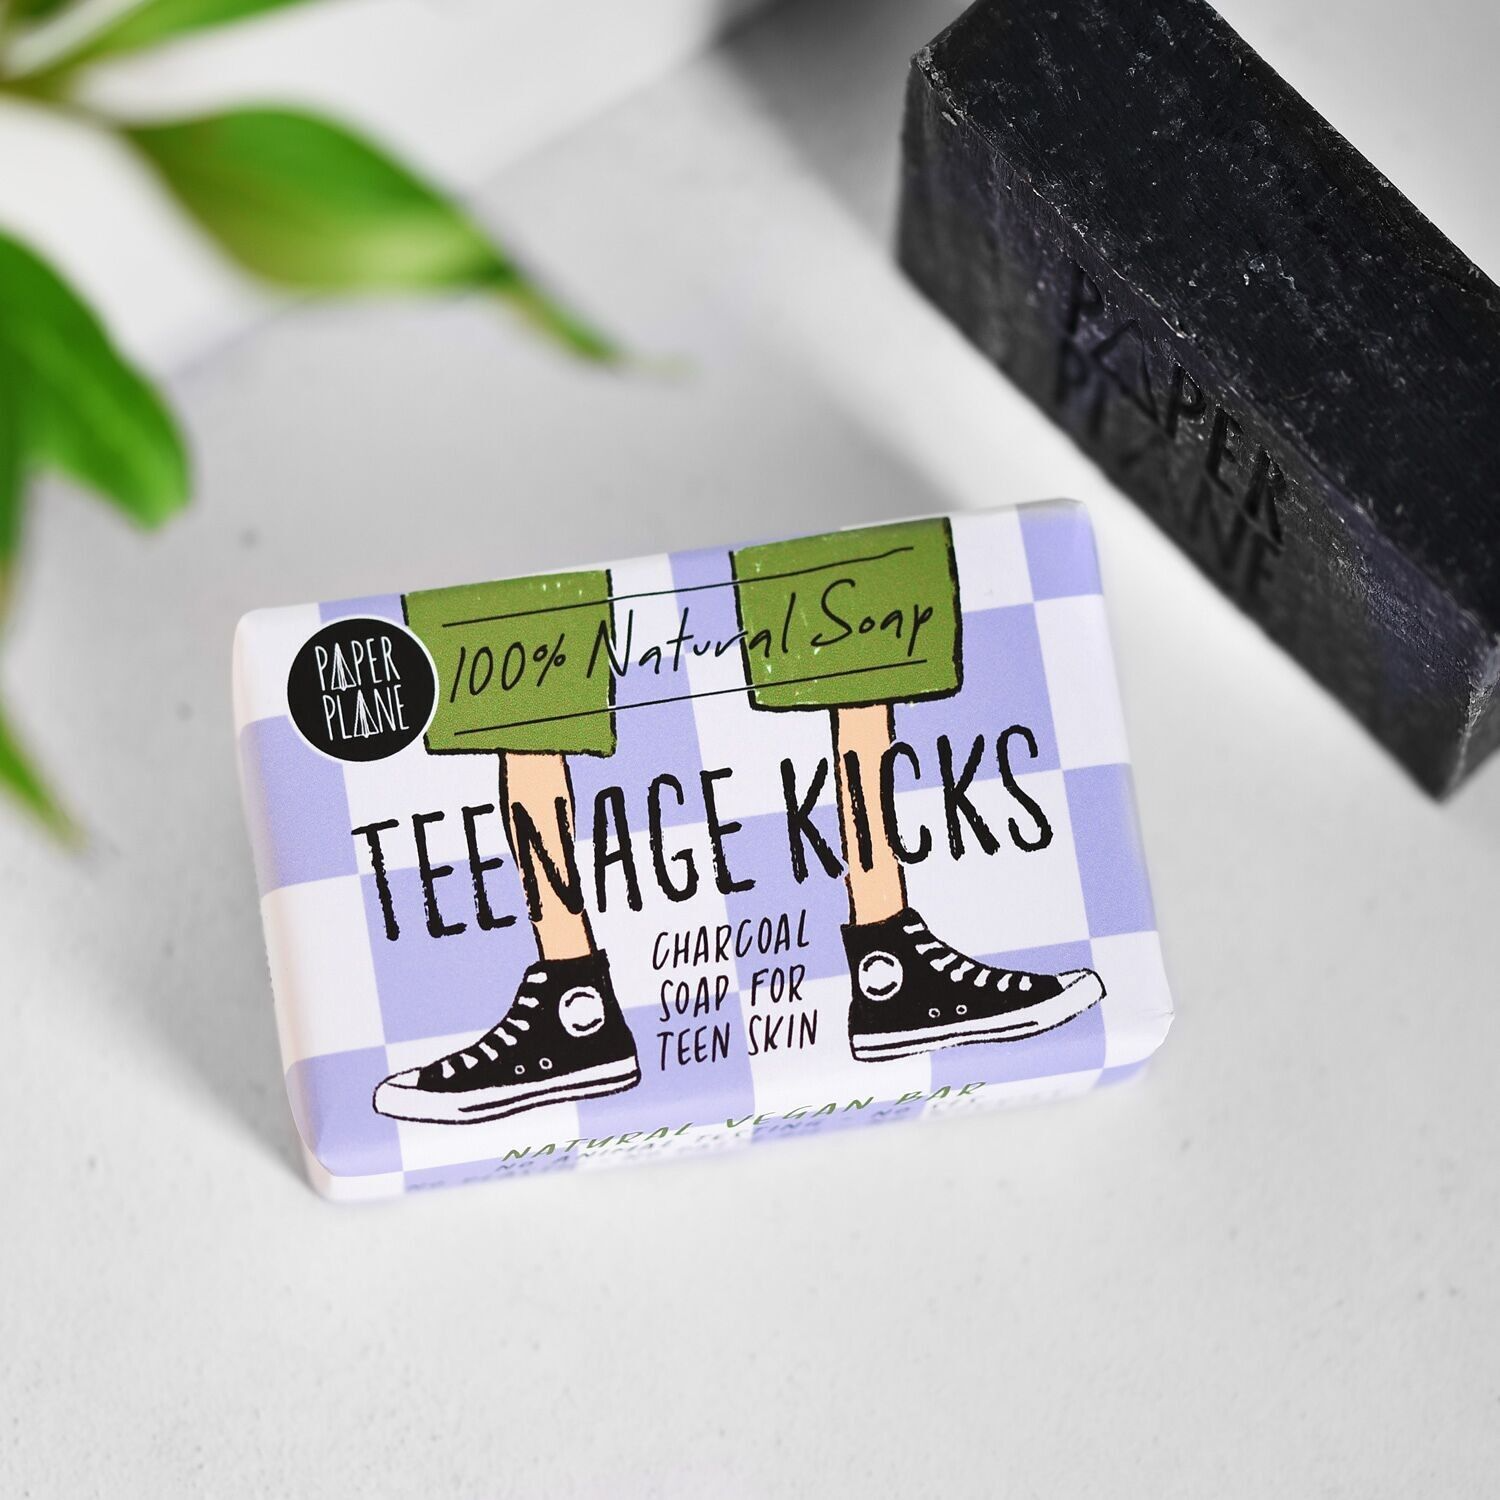 Paper Plane Soap Bar - Teenage Kicks Natural Vegan Soap Bar for Teenagers